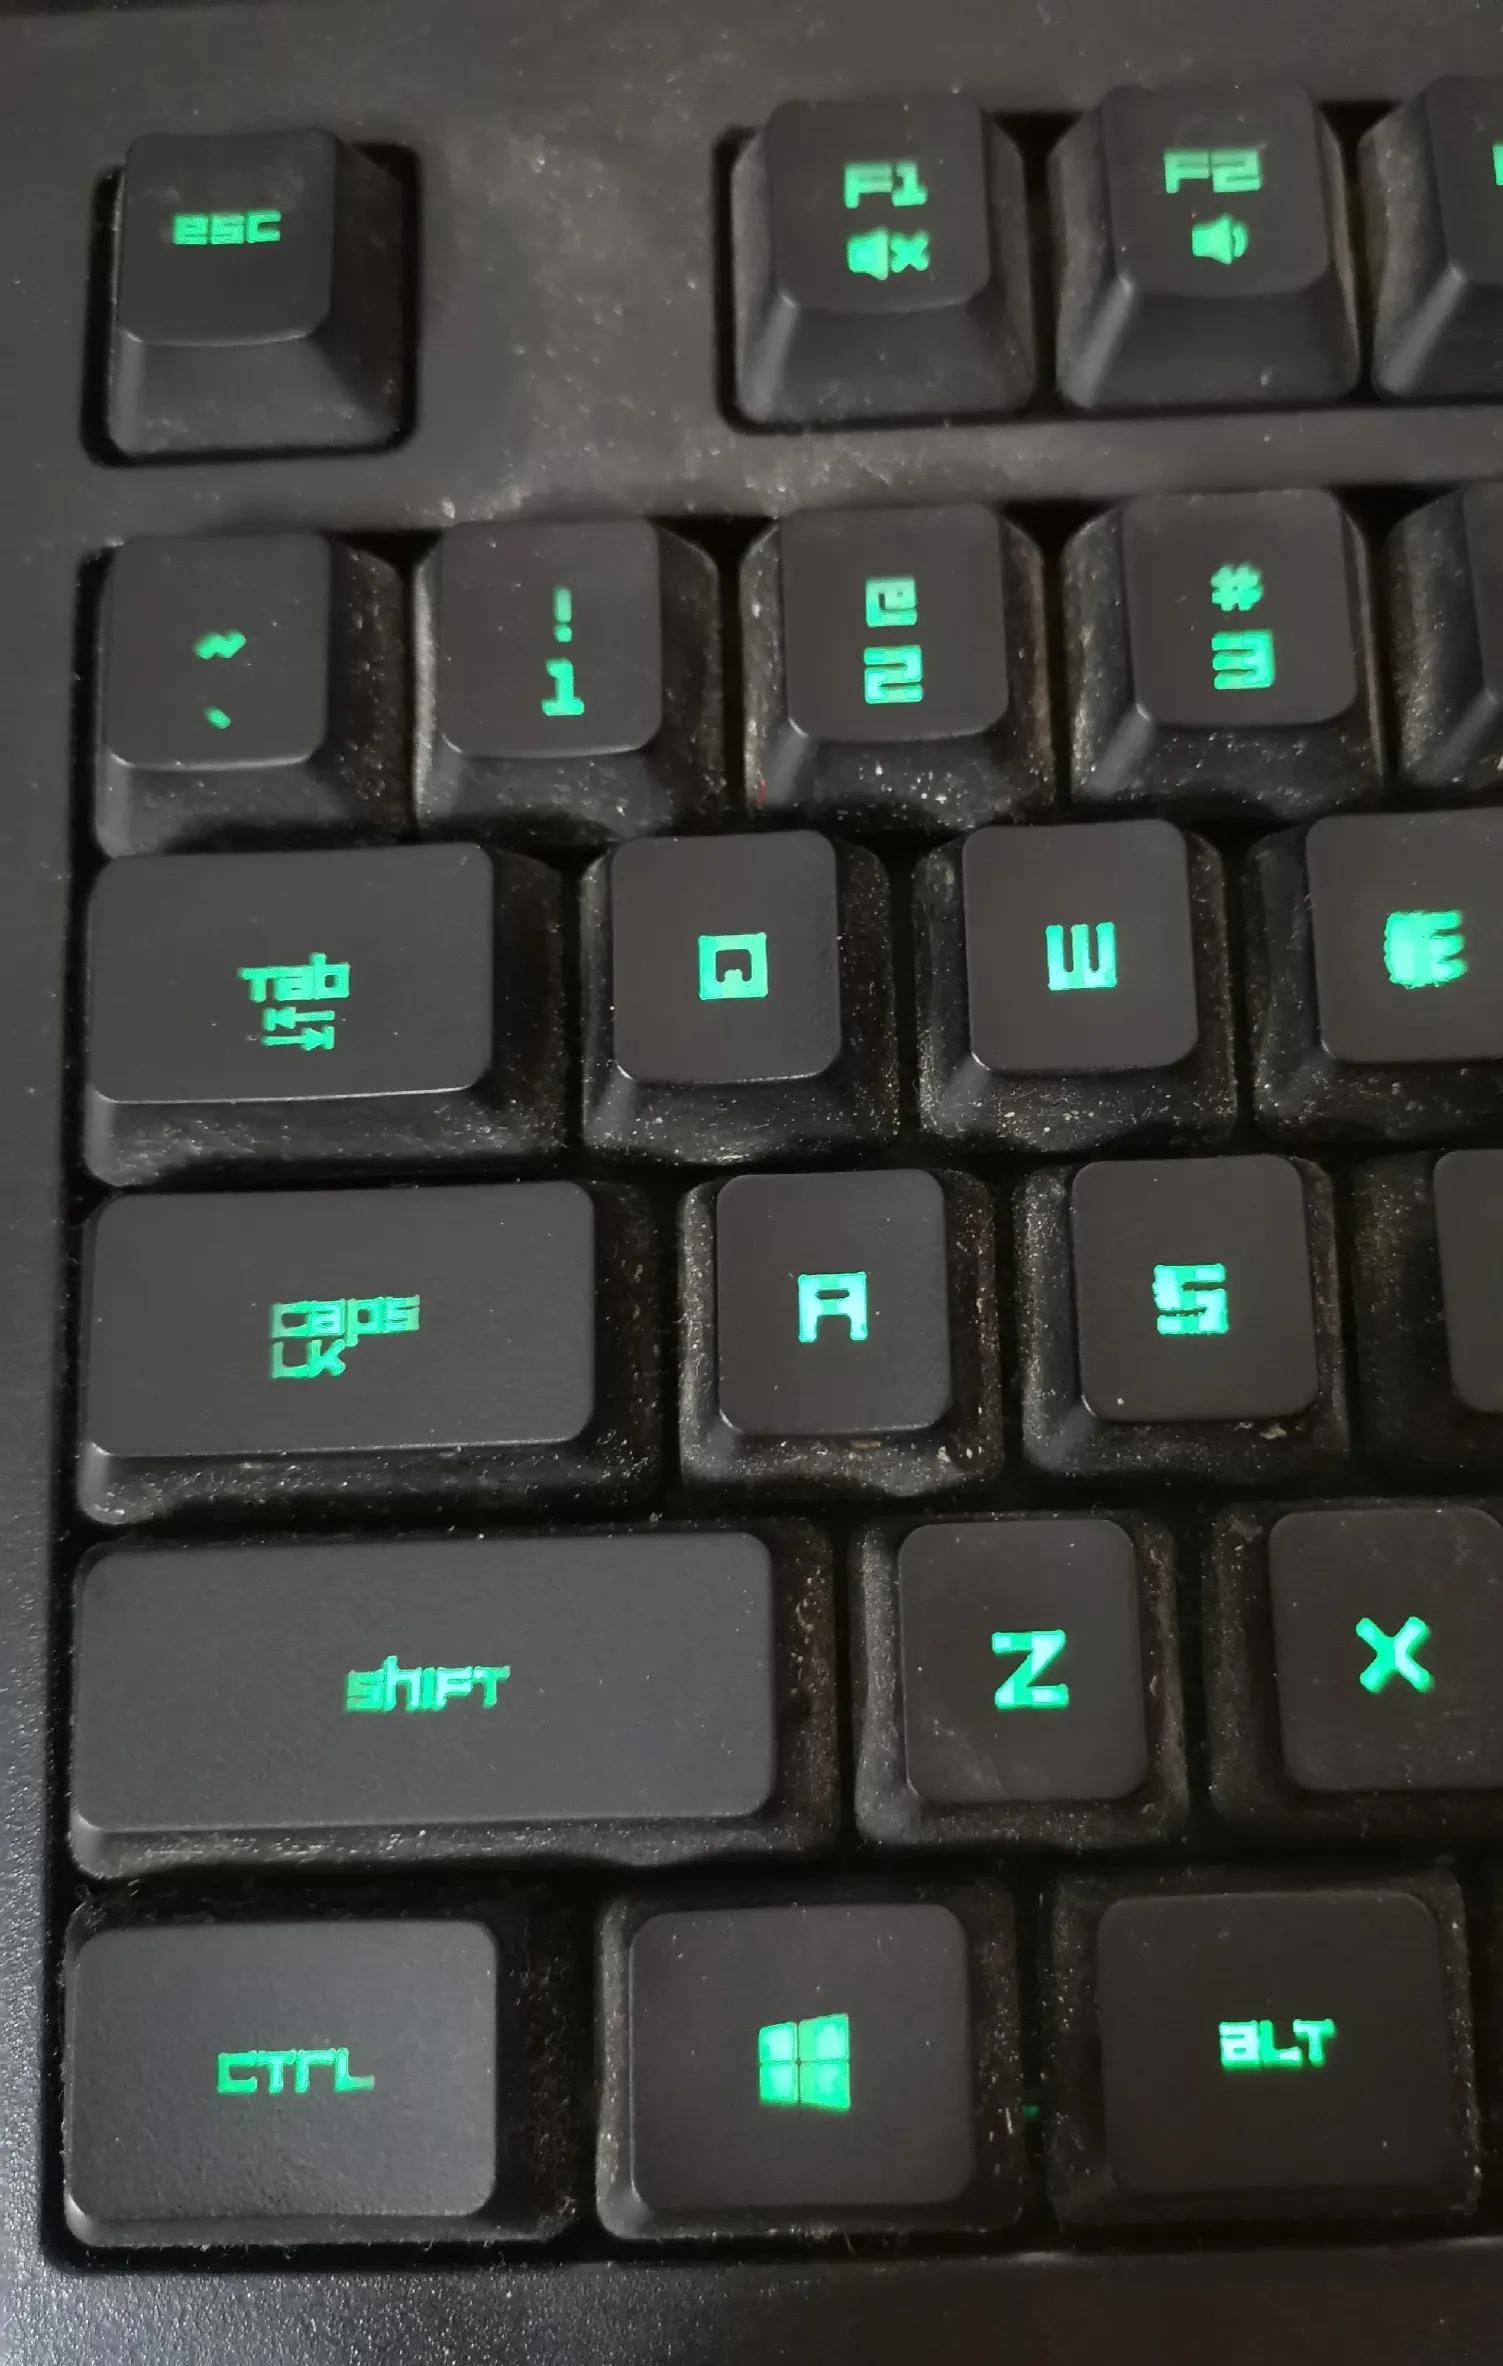 电脑返回上一步快捷键，电脑返回上一步快捷键及常用快捷键？